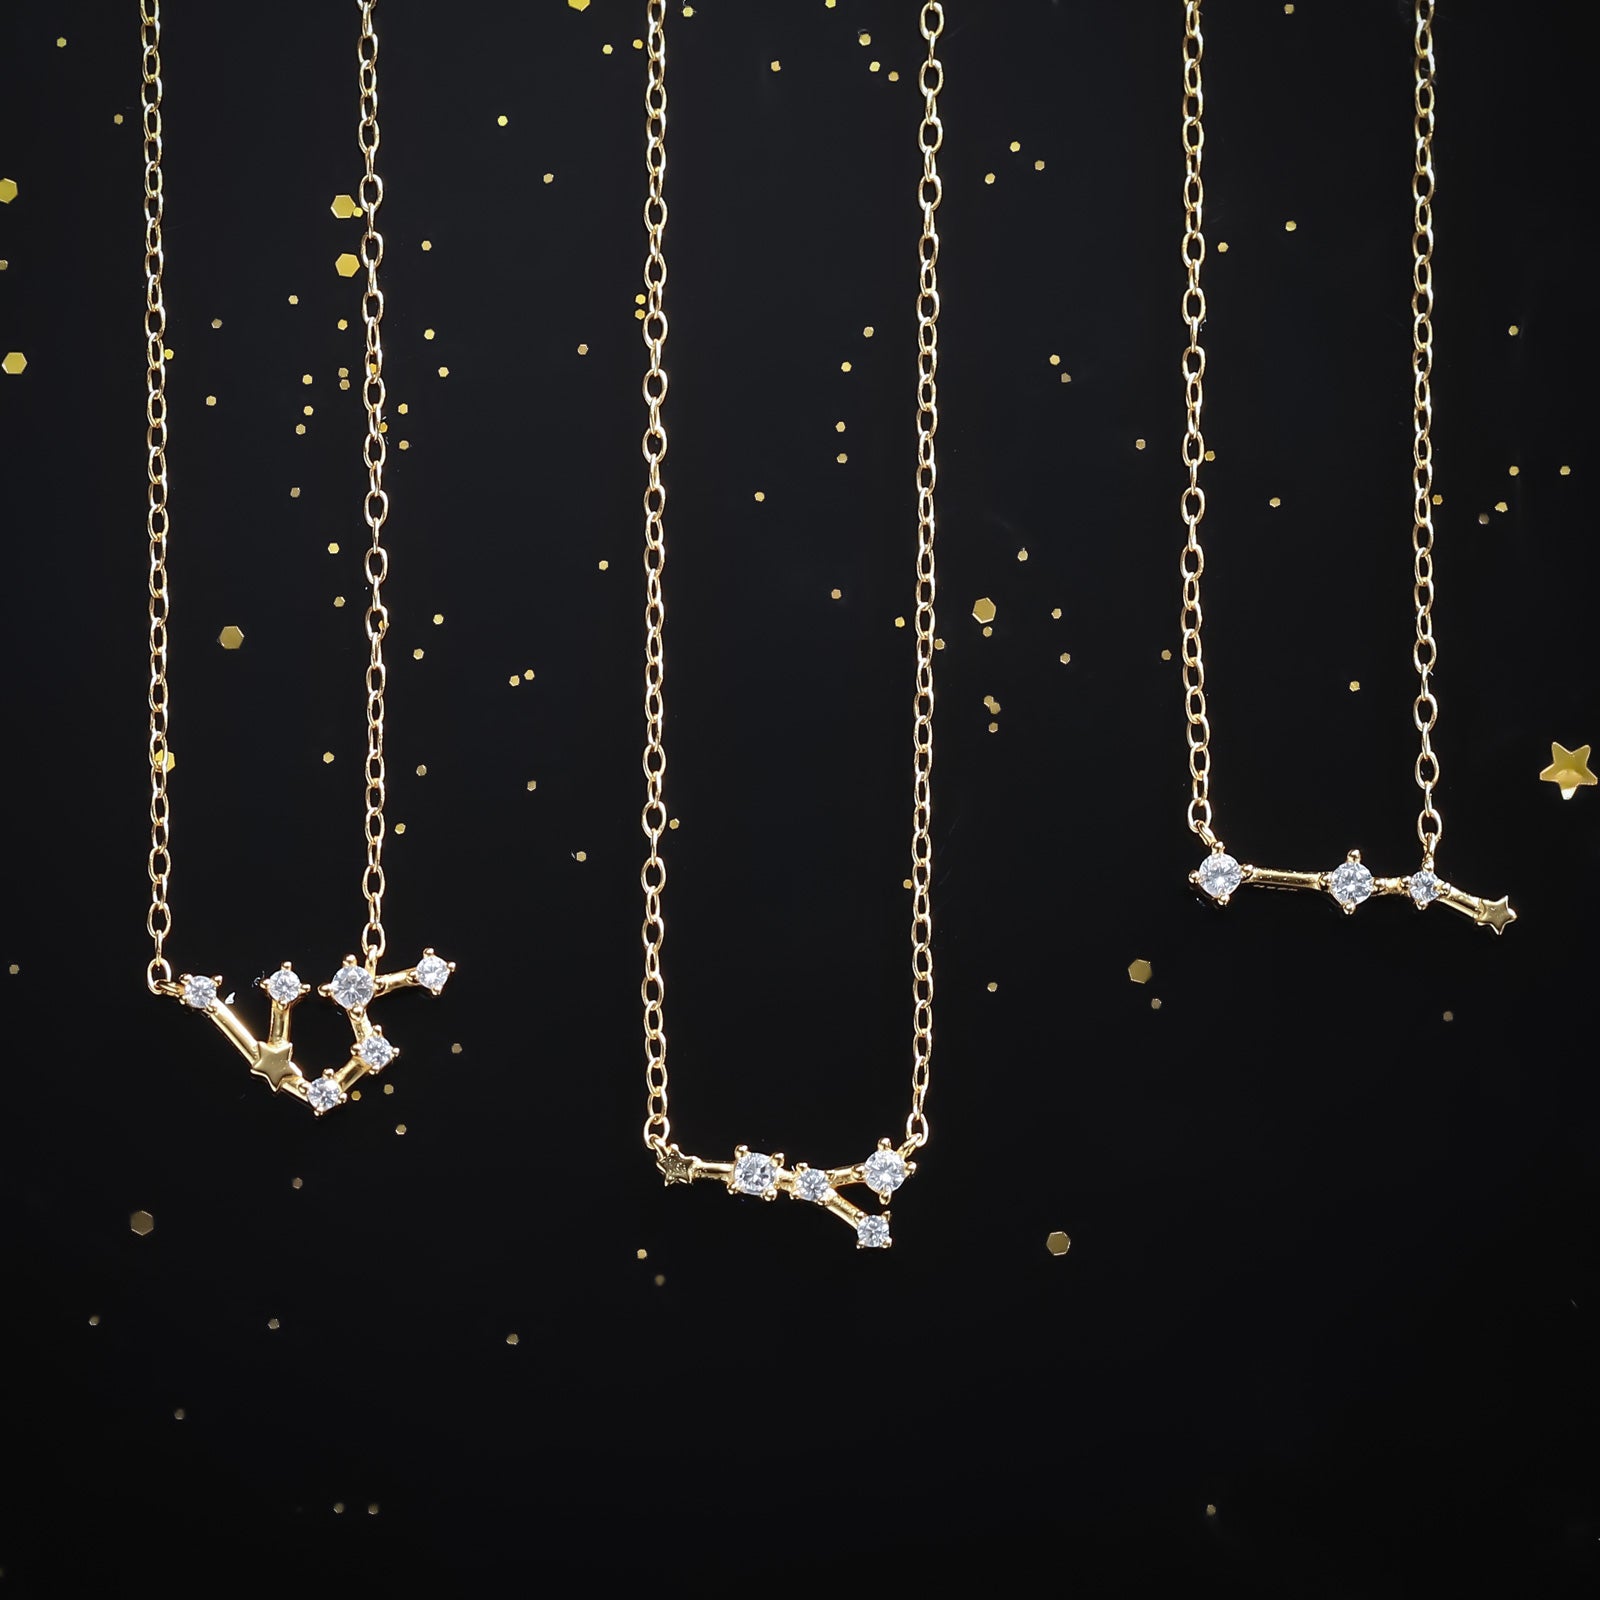 Gold Aquarius Constellation Necklace Set